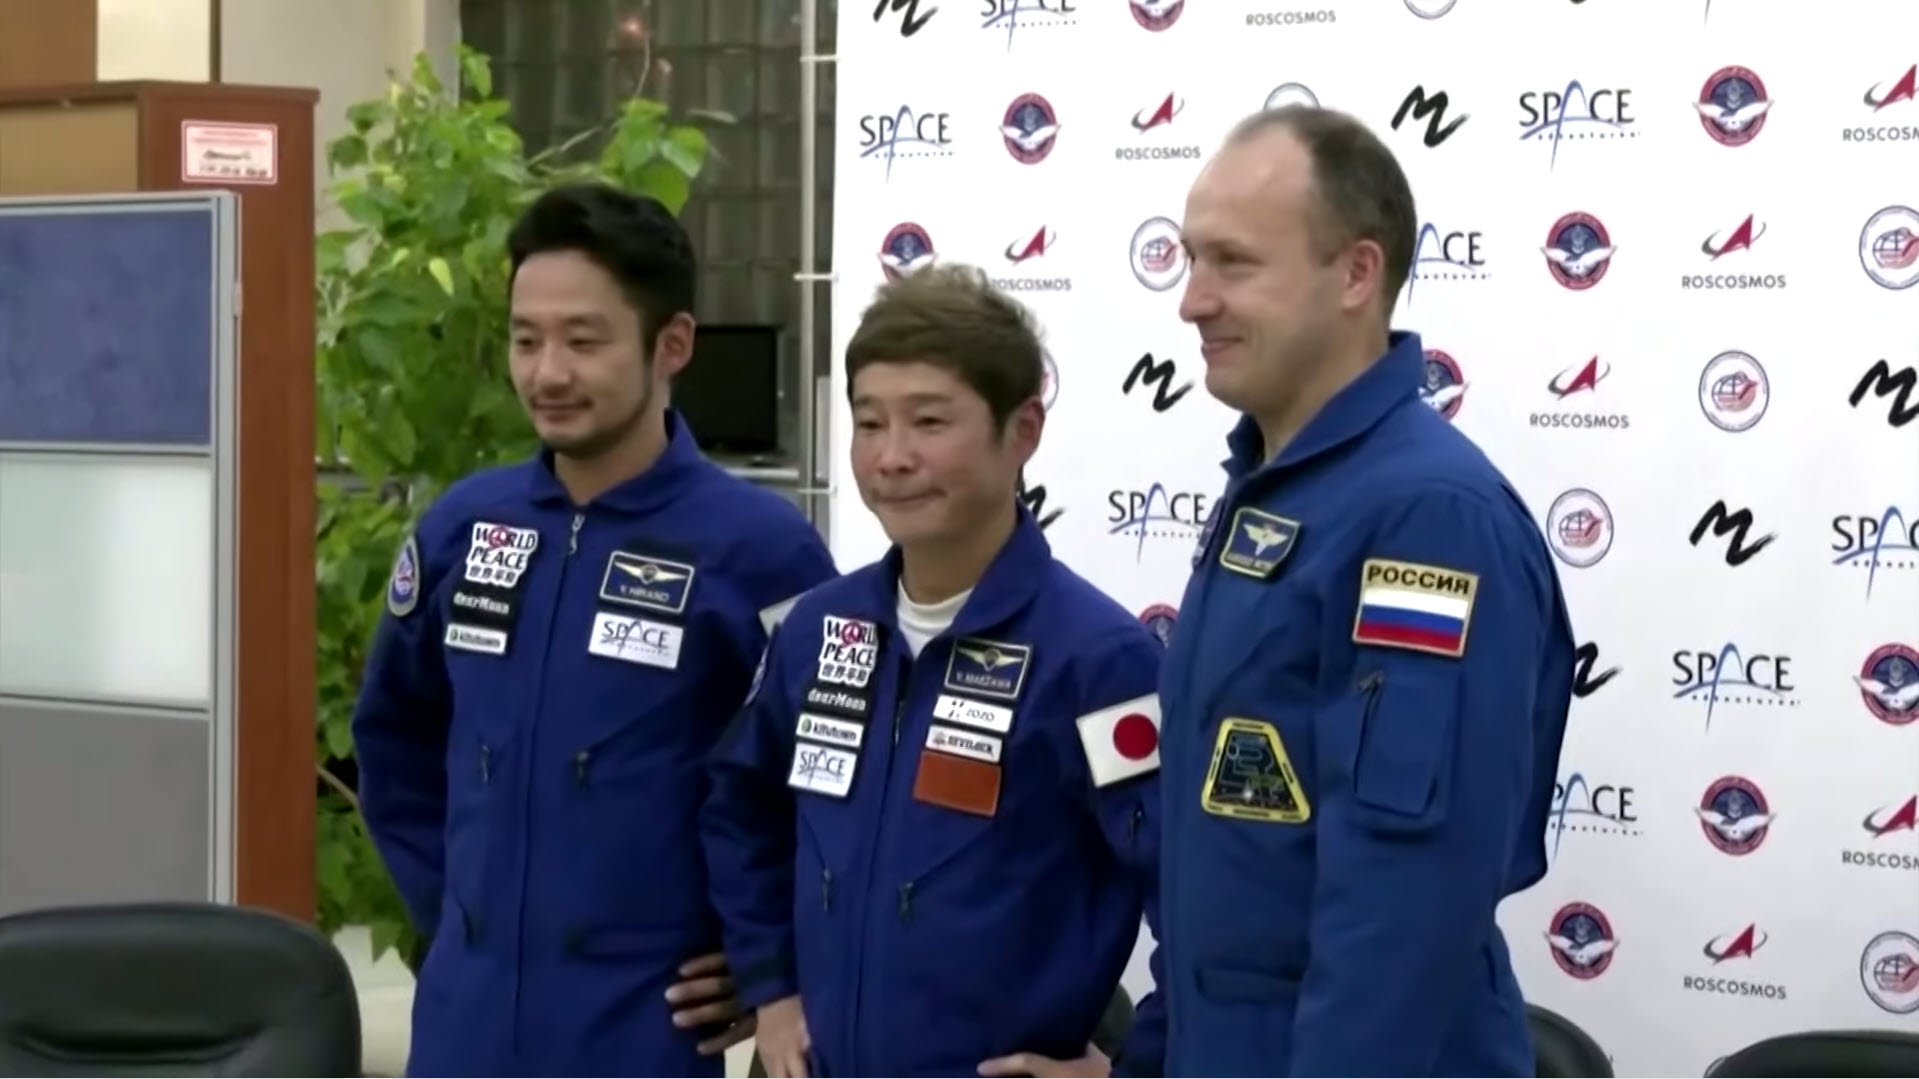 Yusaku Maezawa มหาเศรษฐีญี่ปุ่นจะไปสถานีอวกาศนานาชาติก่อนท่องเที่ยวรอบดวงจันทร์